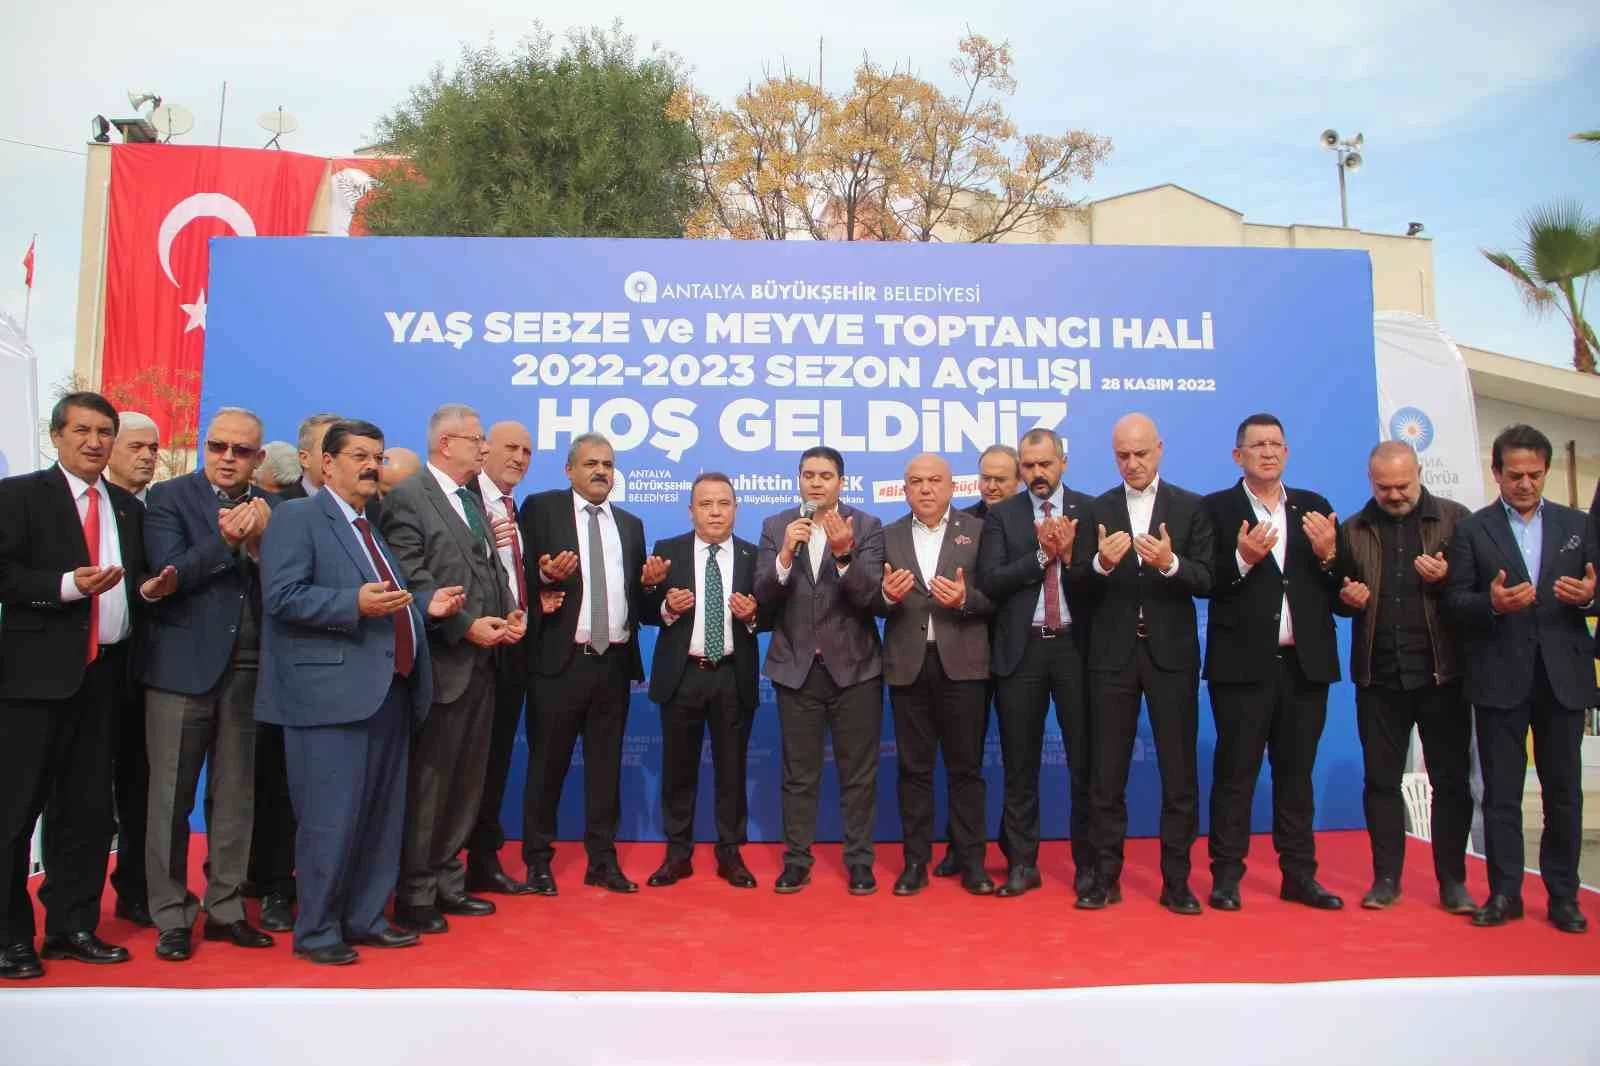 Örtü altı üretim üssü Antalyada, 2022-2023 hal sezonu açıldı